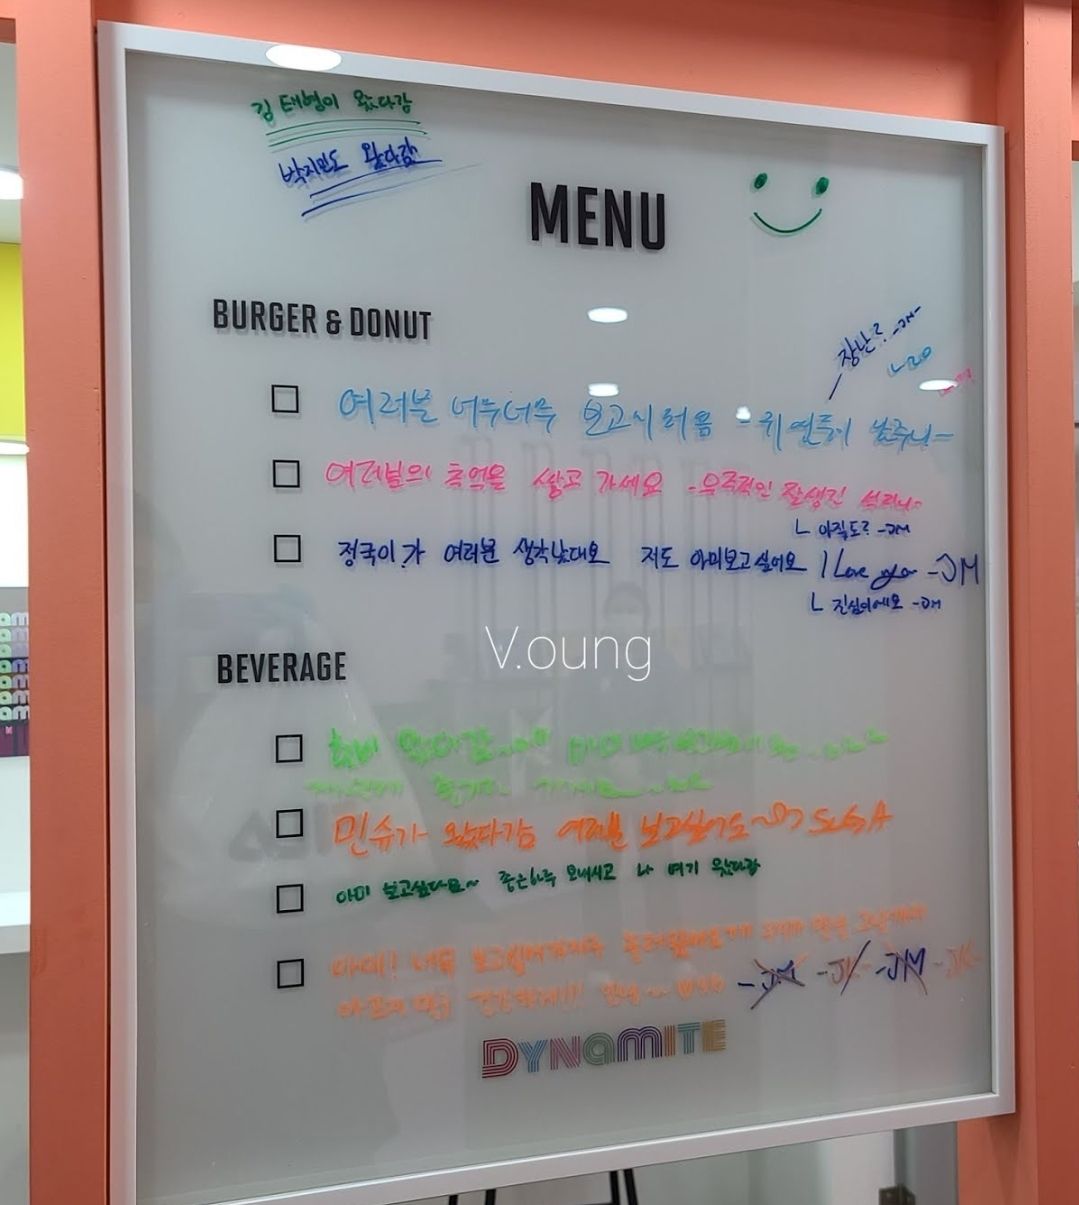 Pesan BTS untuk ARMY di Map of the Soul Pop Up Store, manis dan menyentuh.